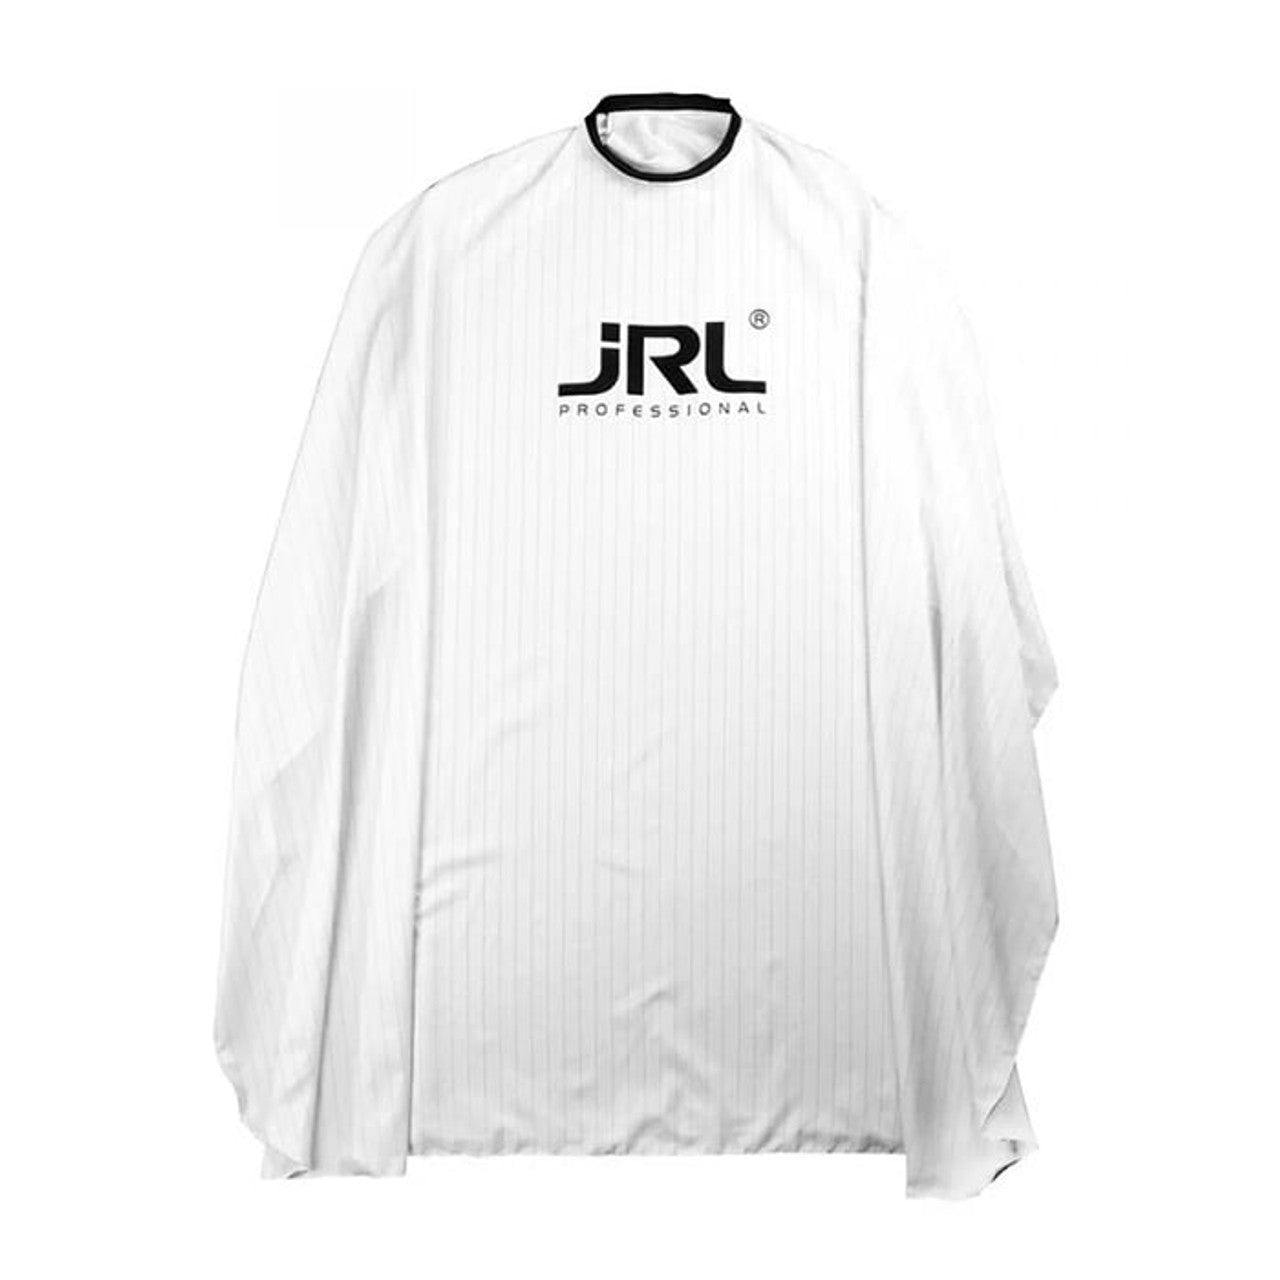 JRL Classic Cutting Cape - White